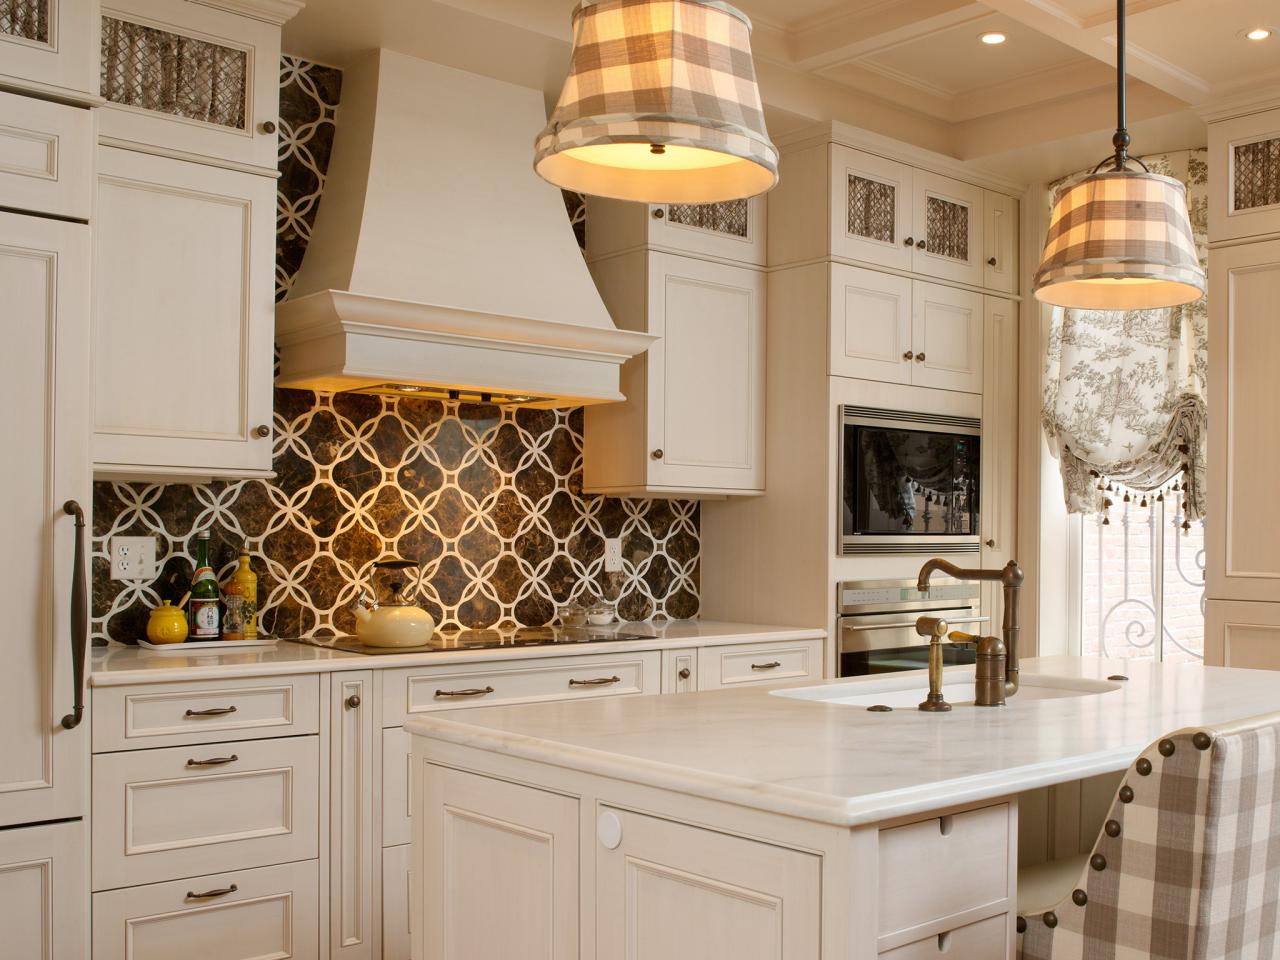 Using Elegant Kitchen Backsplash Tile for a Kitchen Renovation